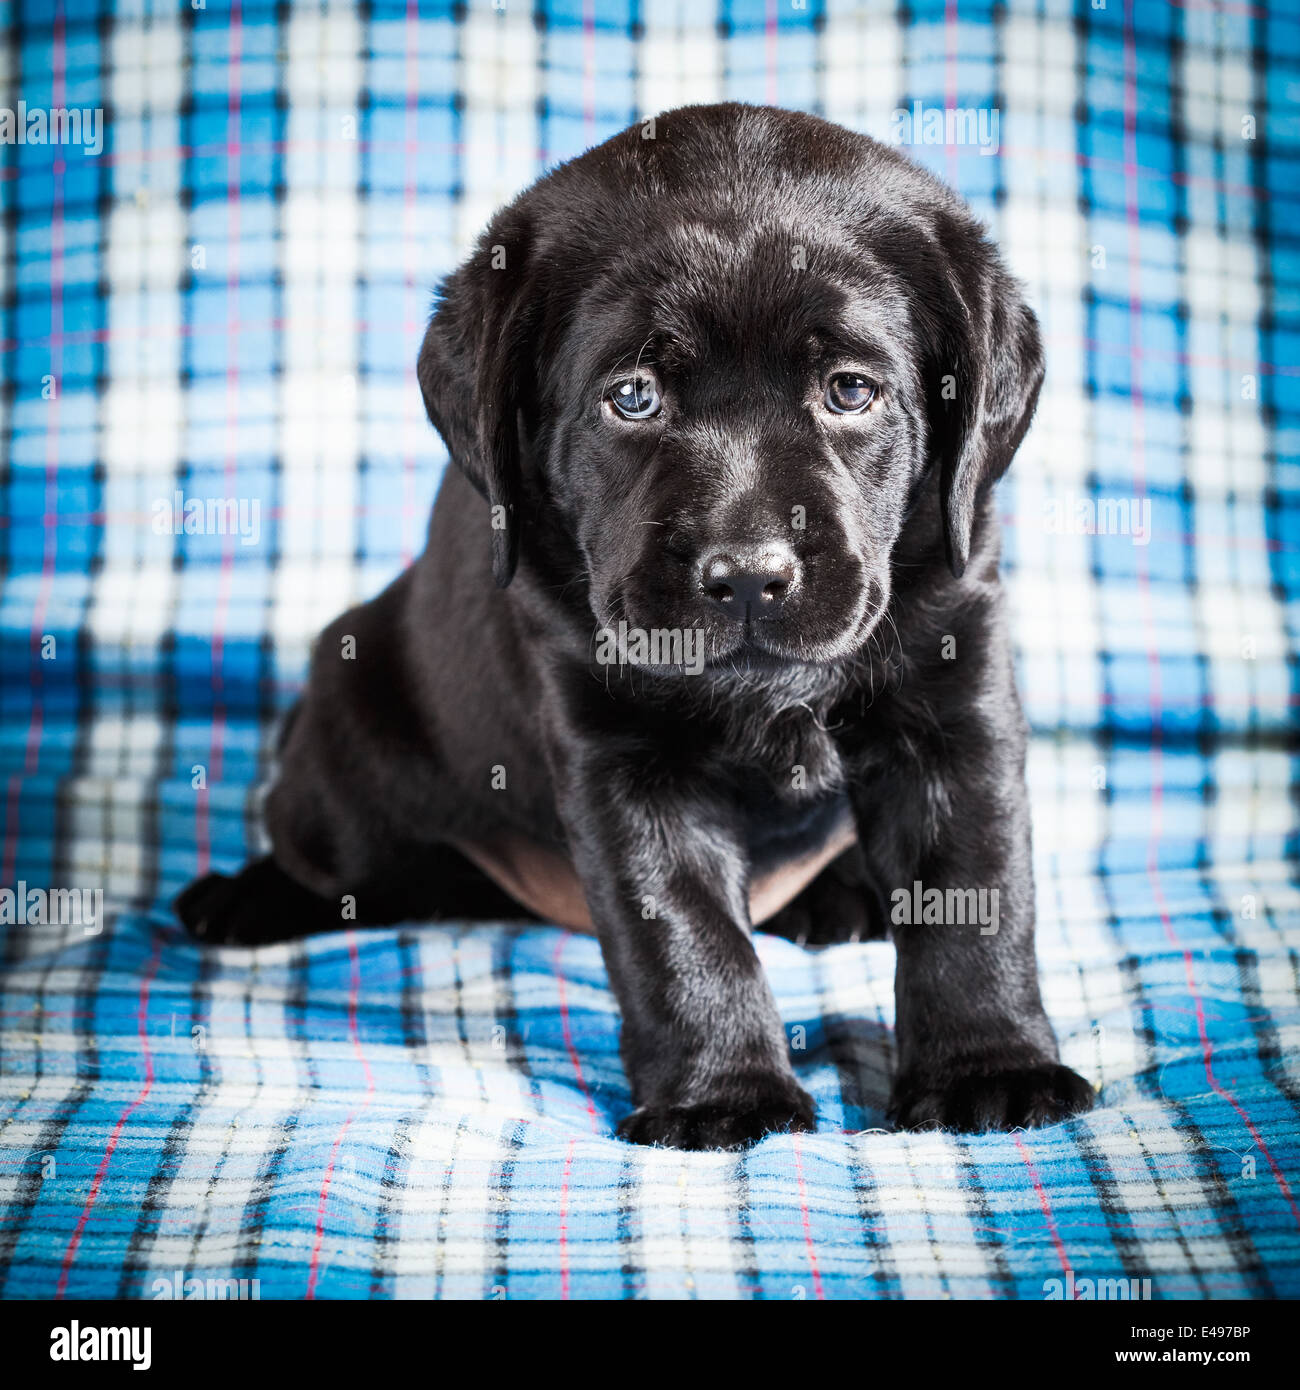 Schöne schwarze Labrador Welpen Hund sitzt auf karierten Hintergrund  Stockfotografie - Alamy